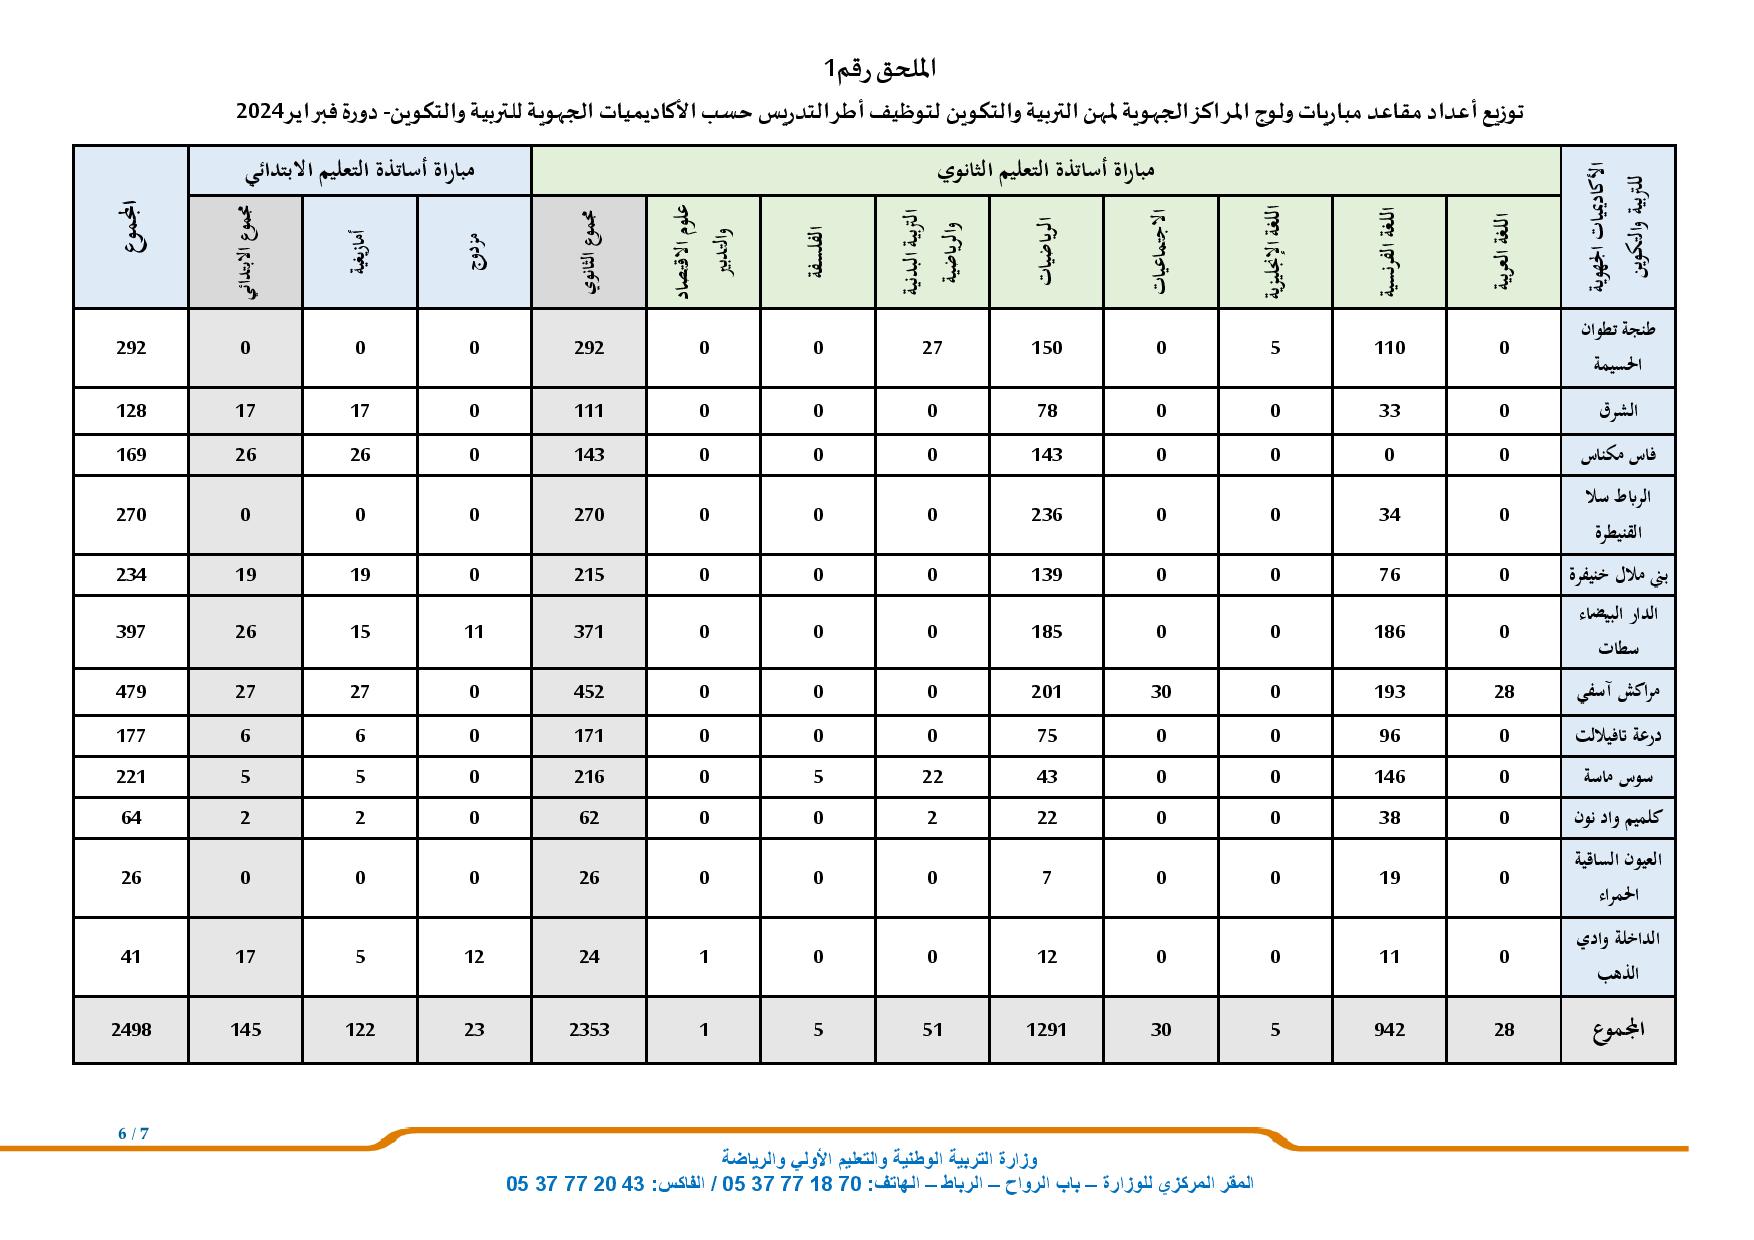 توزيع عدد المناصب في مباراة التعليم دورة فبراير 2024حسب الجهات